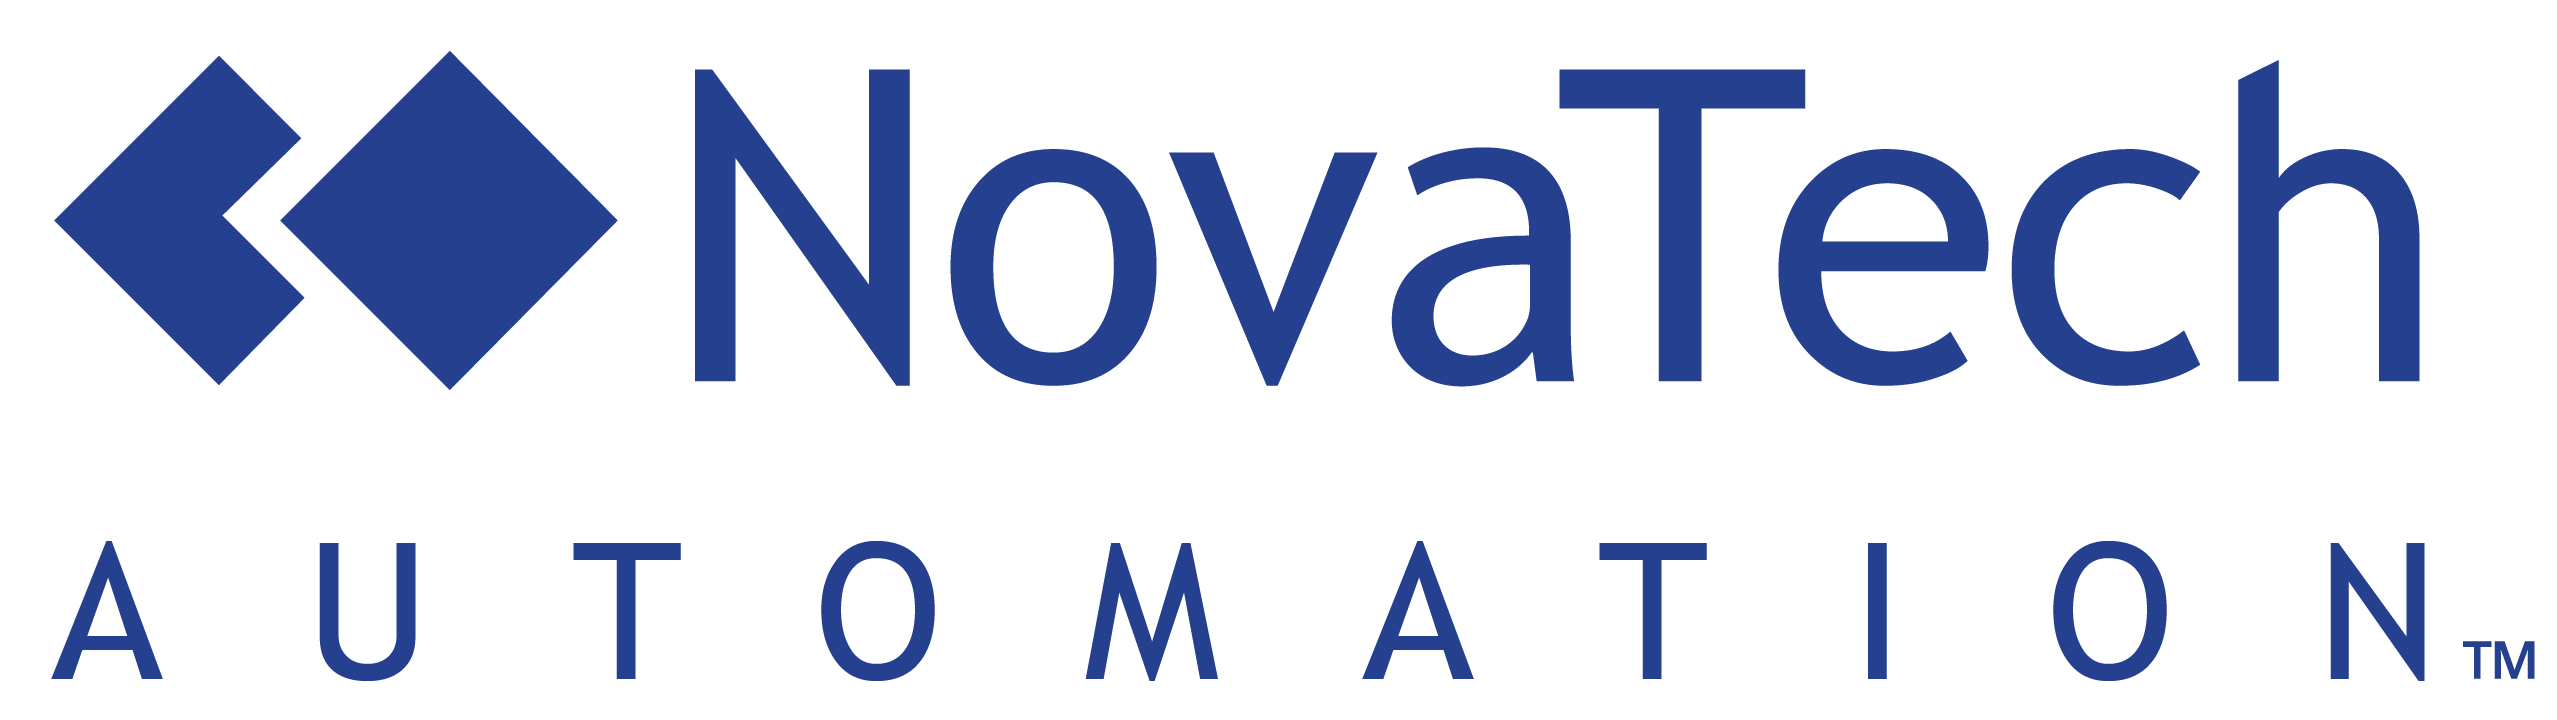 NovaTech Automation